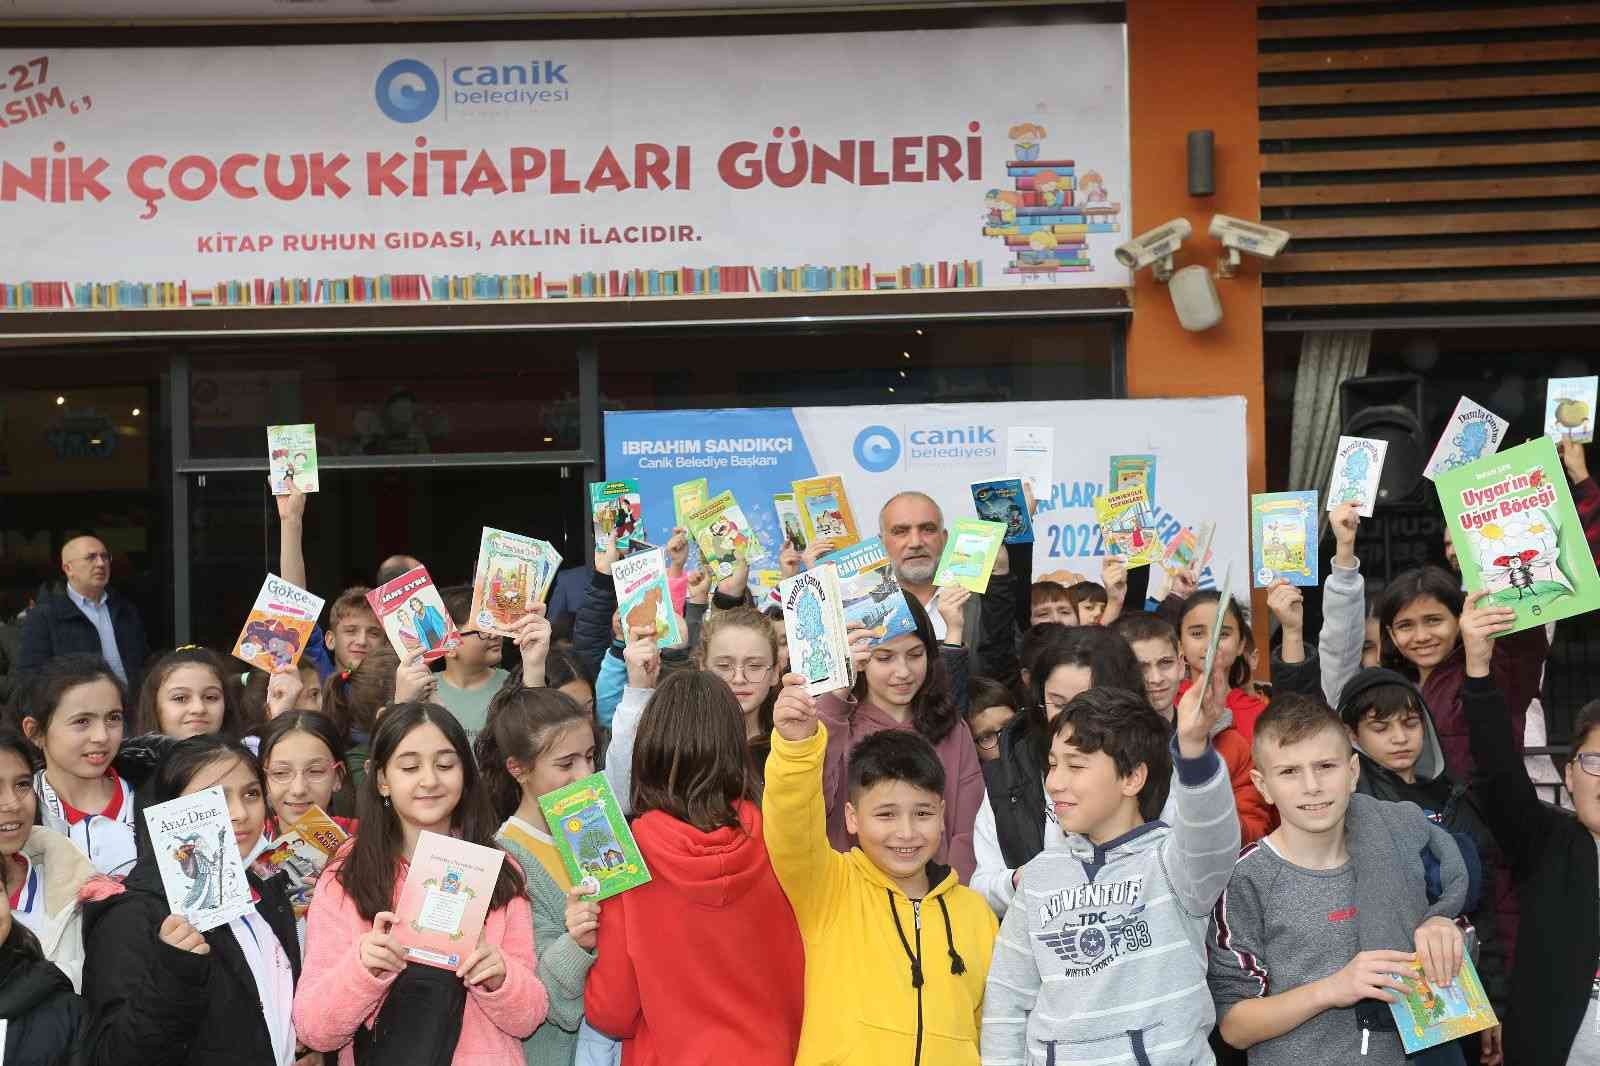 Başkan Sandıkçı: “Okuma kültürü kazanan bir nesil yetiştirmeliyiz”